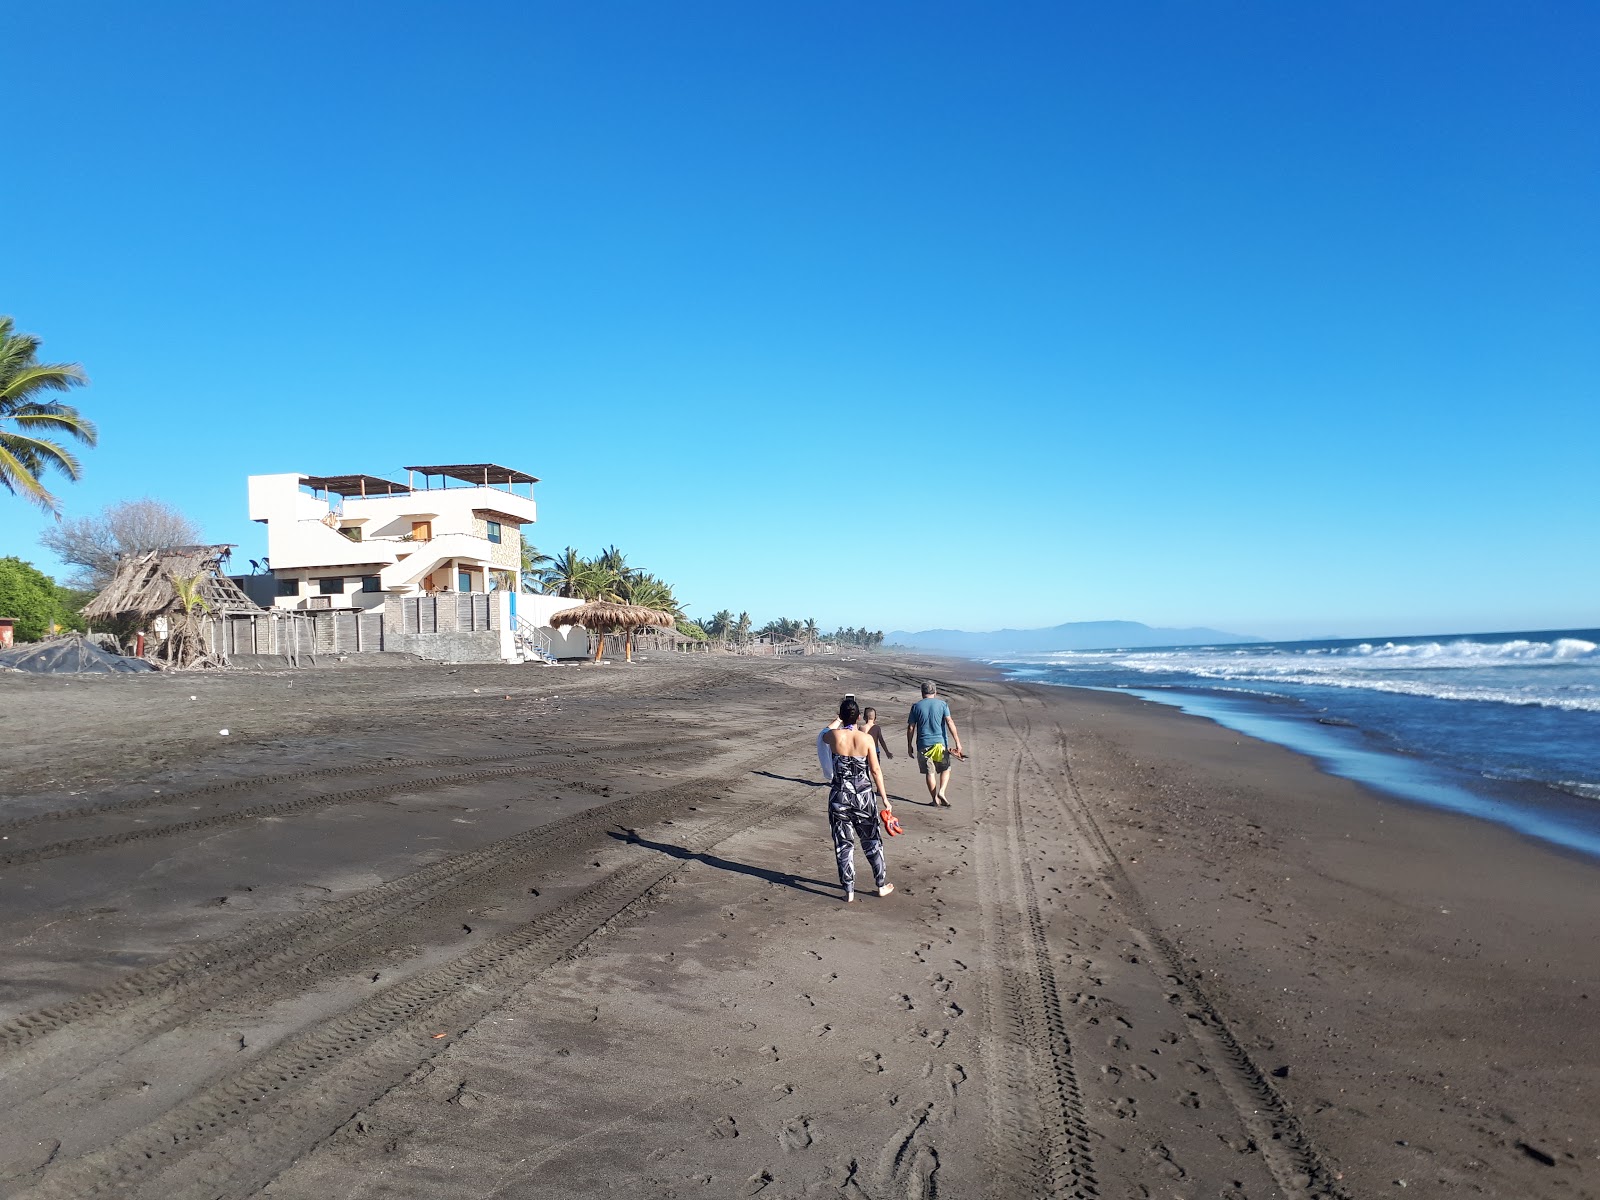 Foto di Playa El Real con una superficie del sabbia scura